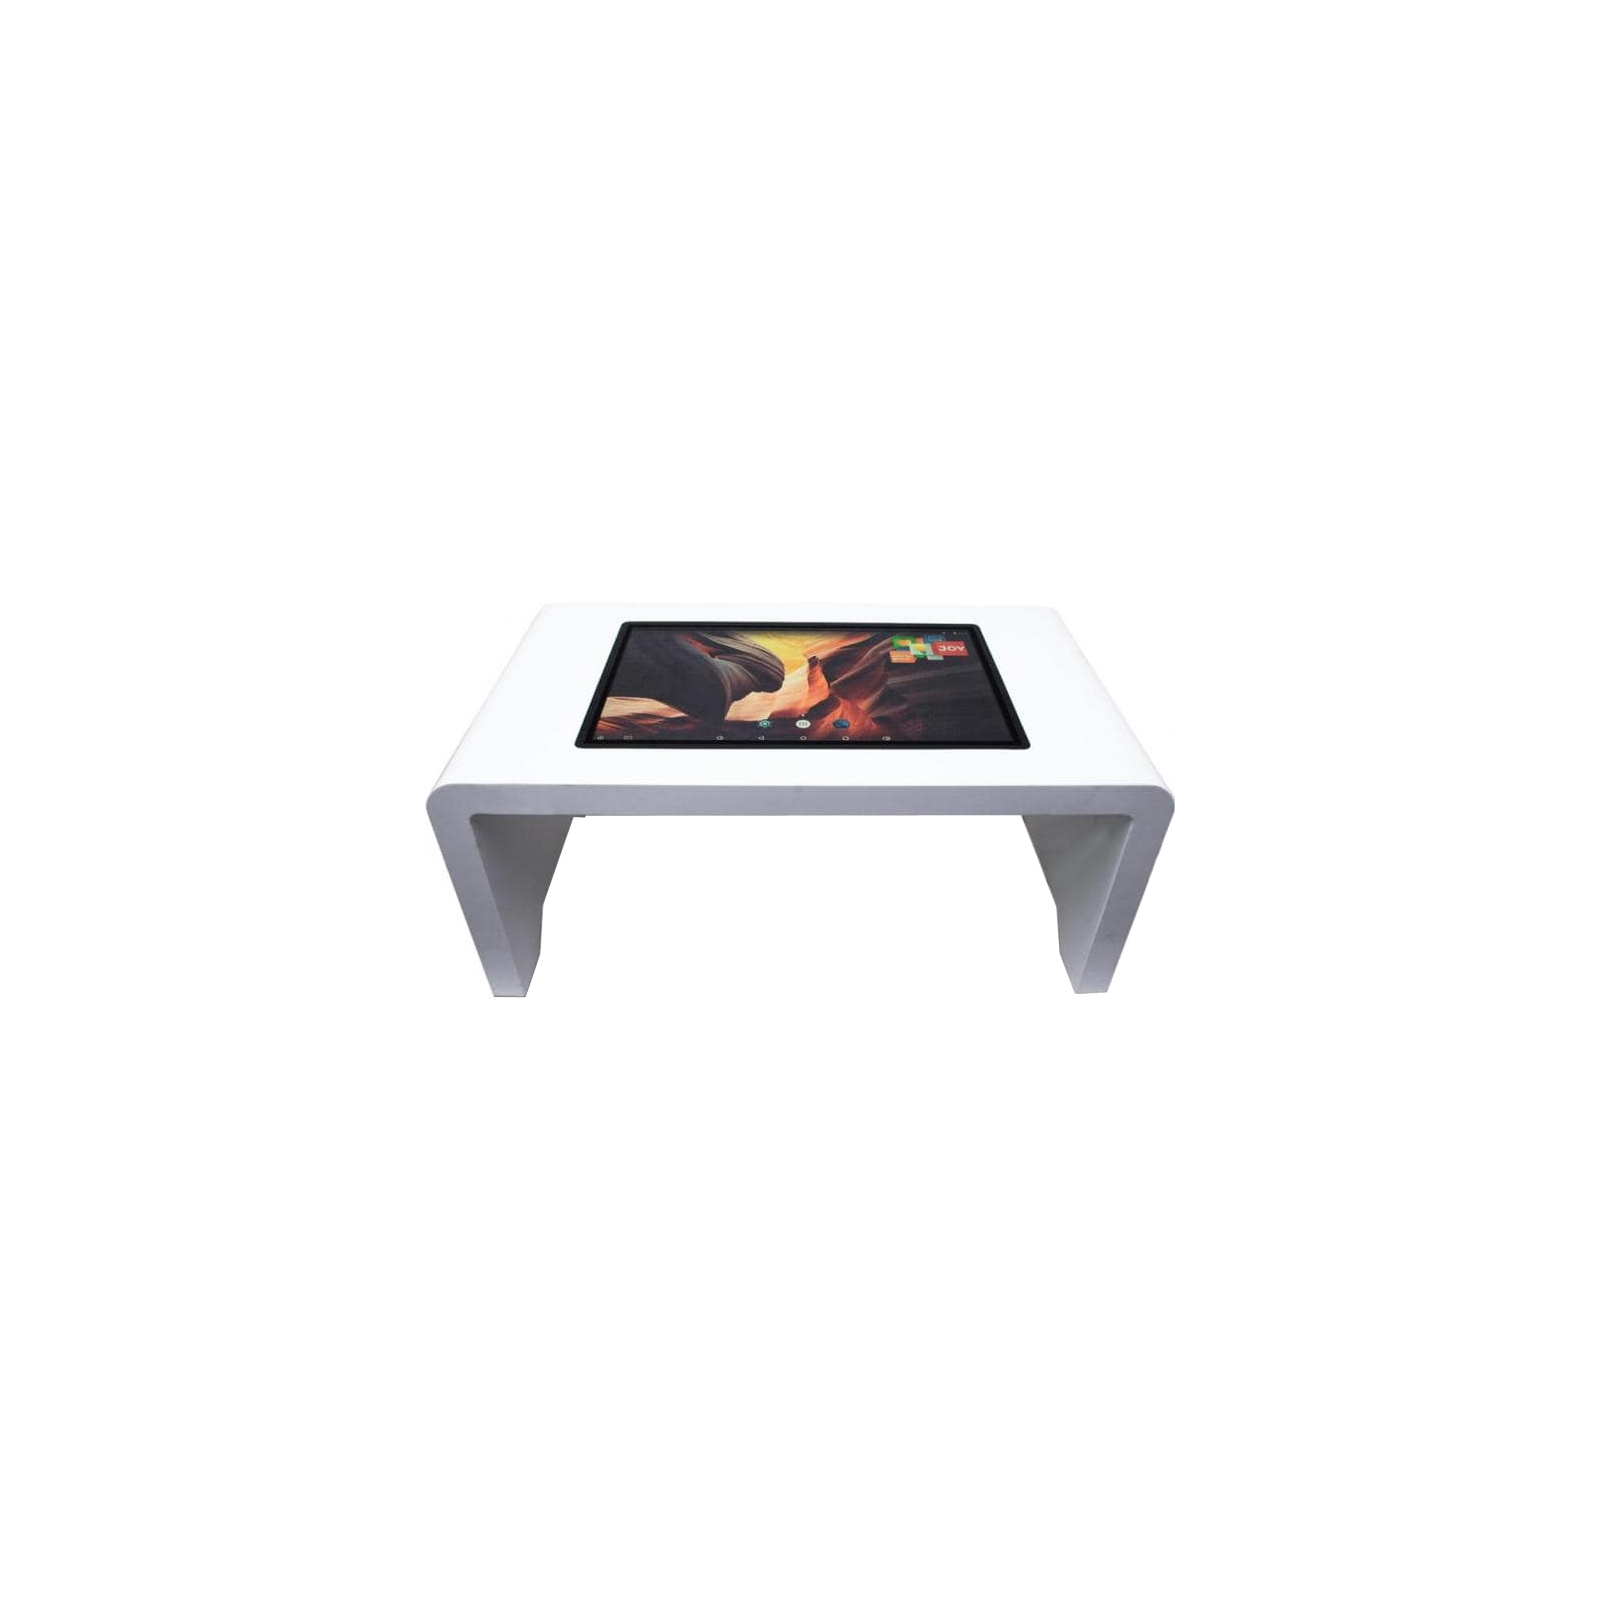 Інтерактивний стіл Intboard STYLE 32 W